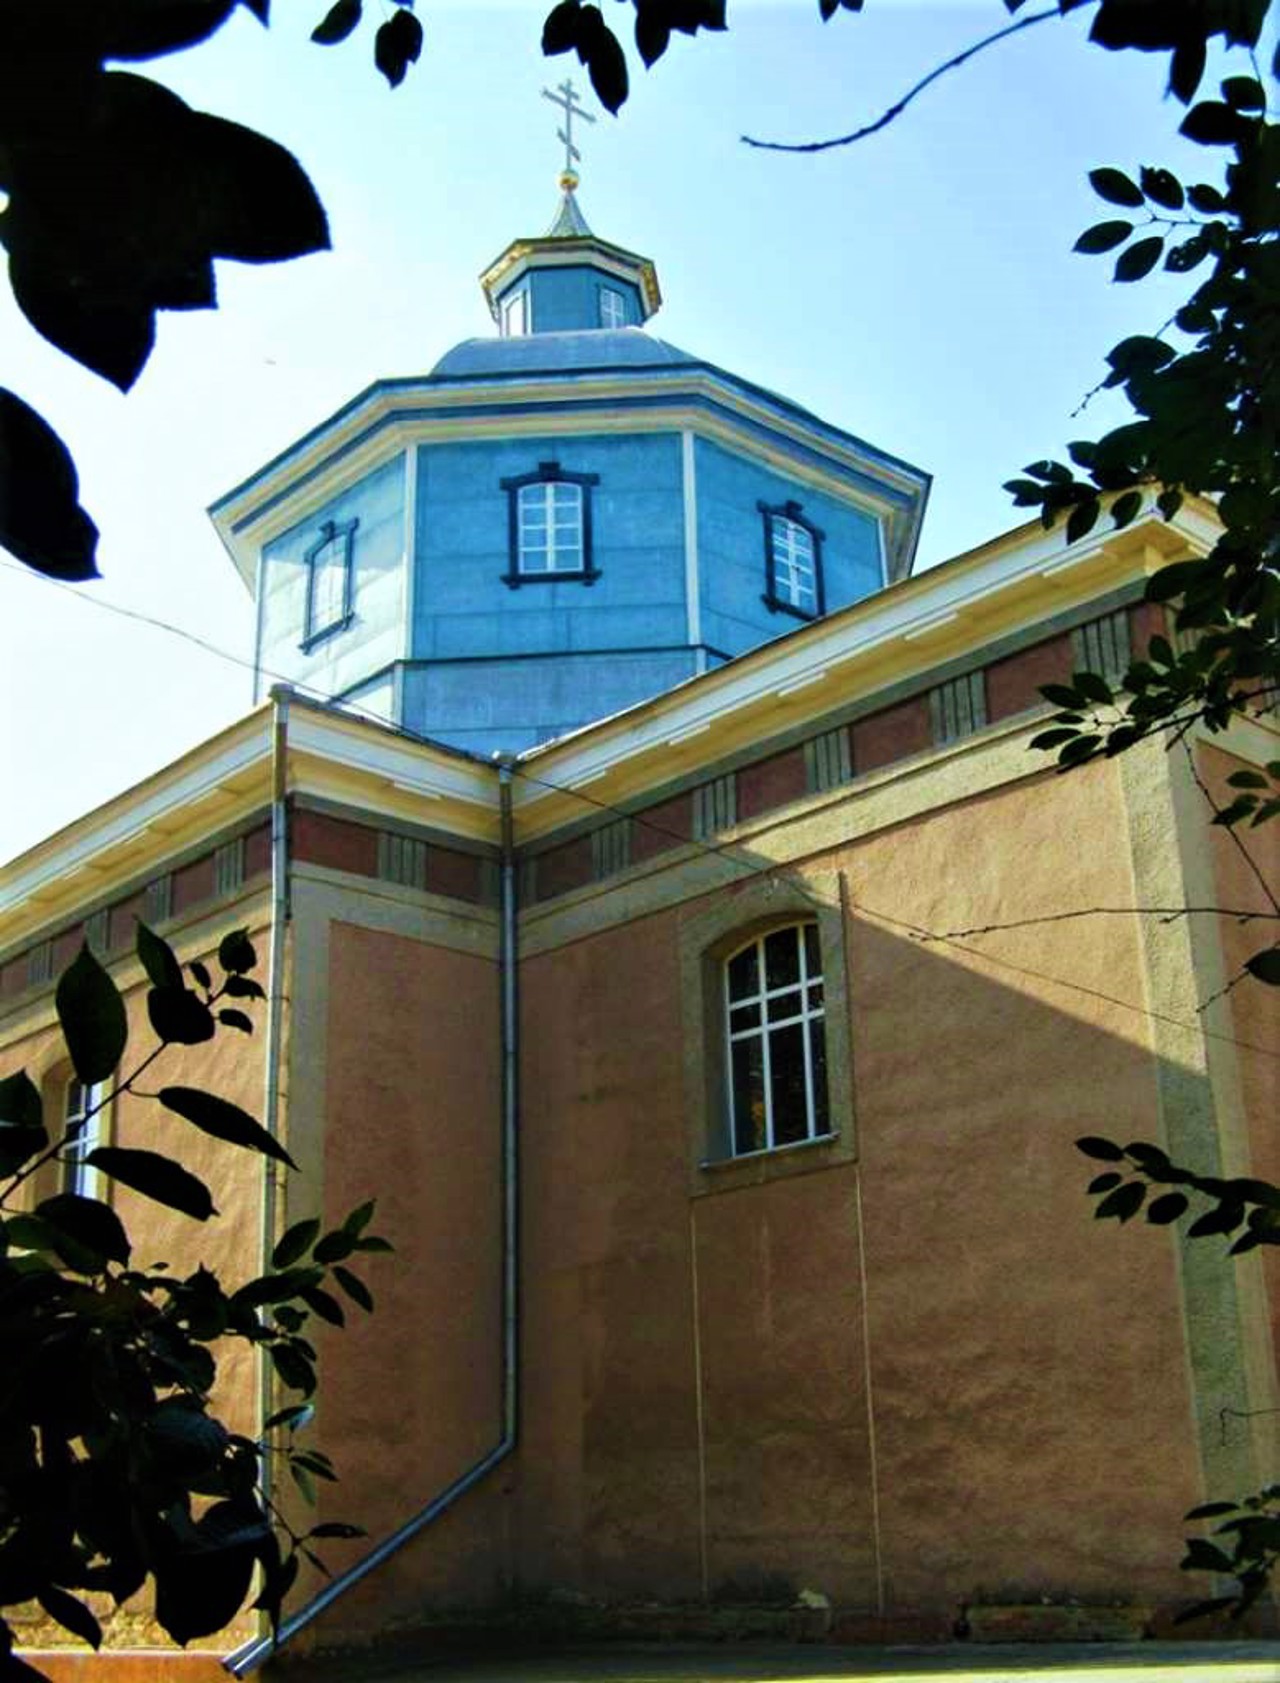 Успенська церква, Тульчин